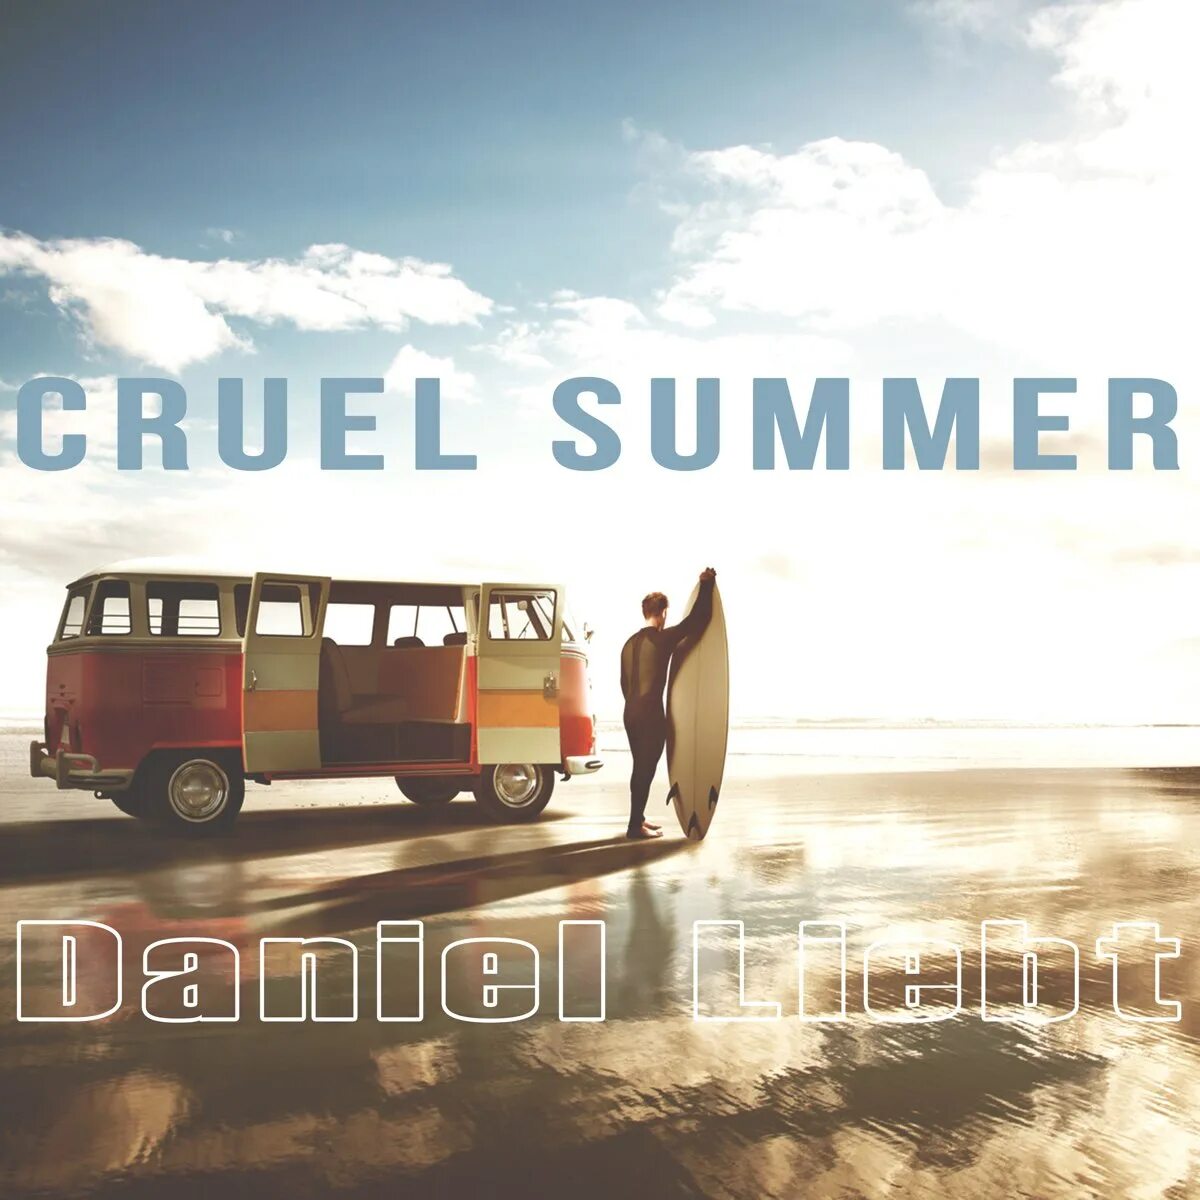 Cruel summer песня. Summer Daniels. Cruel Summer Song. Cruel Summer album Cover.